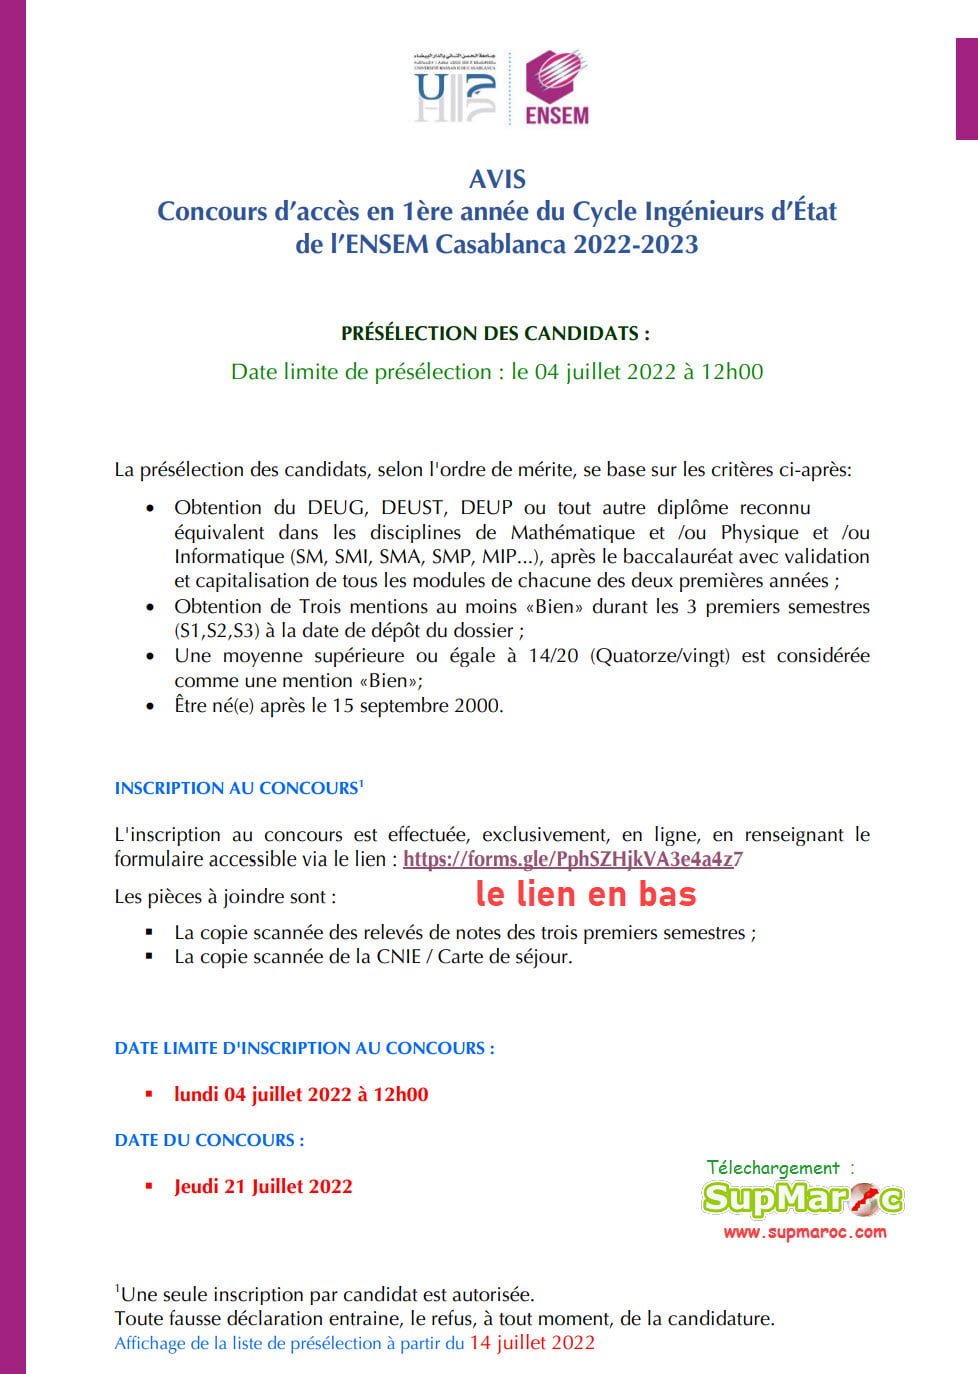 Concours  ENSEM Casa Casablanca  Ecole Nationale Supérieure d'Electricité et de Mécanique de Casablanca2022 2023